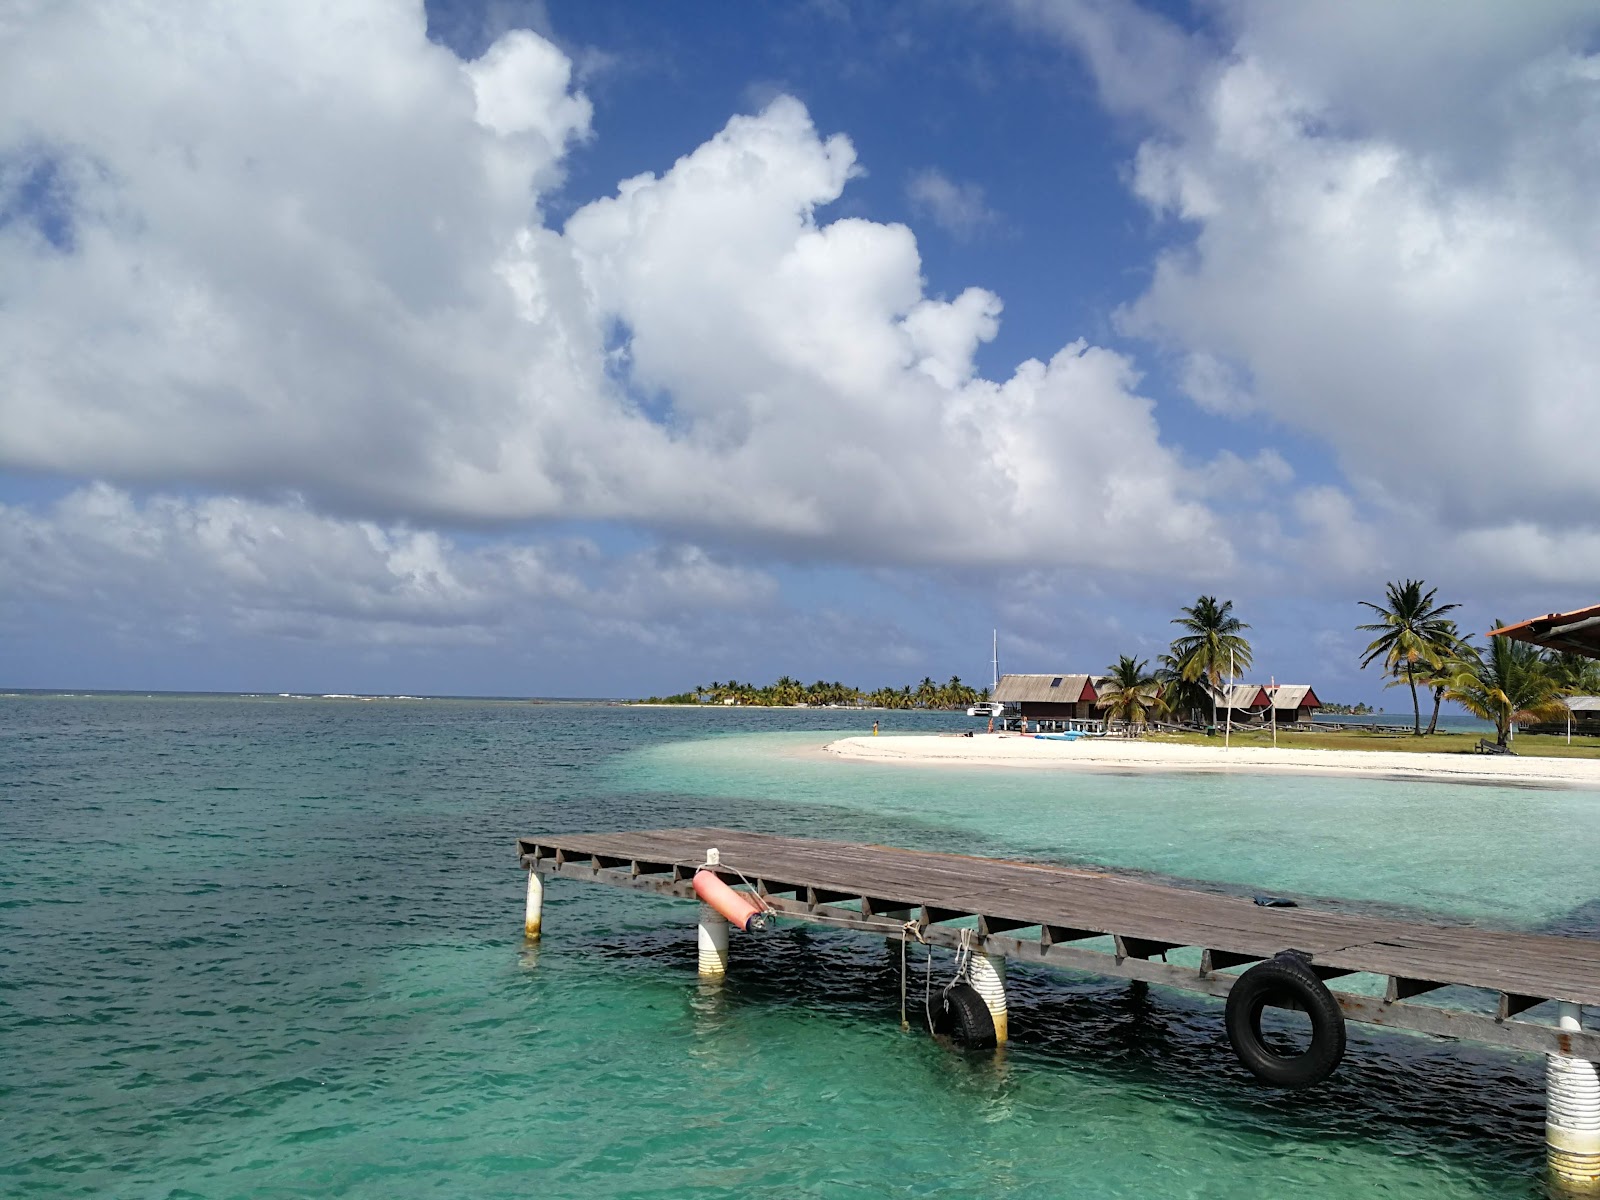 Foto de Waily Lodging beach - lugar popular entre os apreciadores de relaxamento